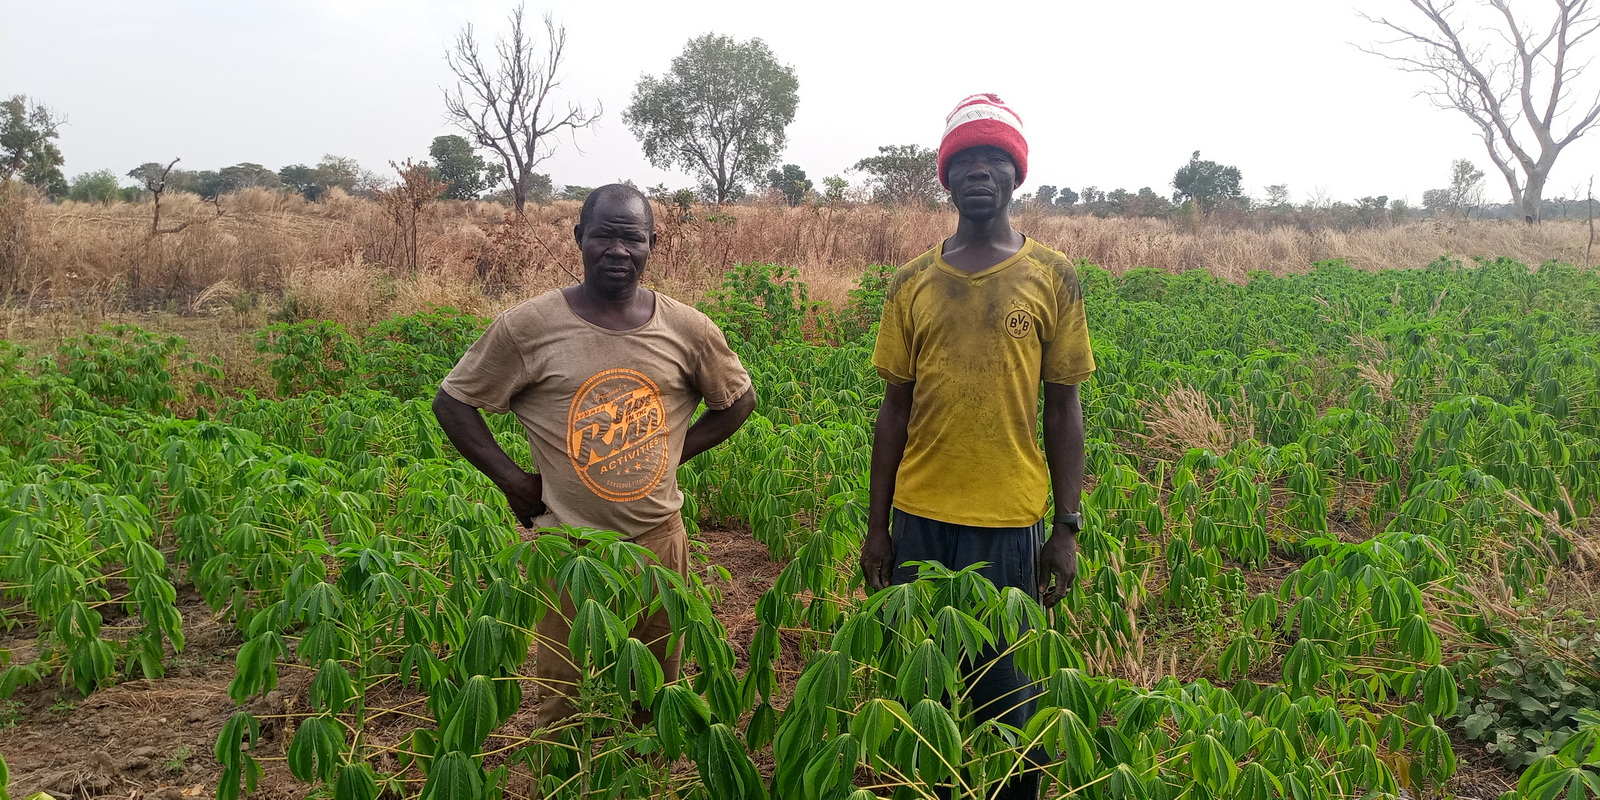 Místní koordinátor ve vesnici Doyen a náčelník vesnice v prosinci 2021 dohlížející na pole manioku, jedné ze základních potravin v jižním Čadu.